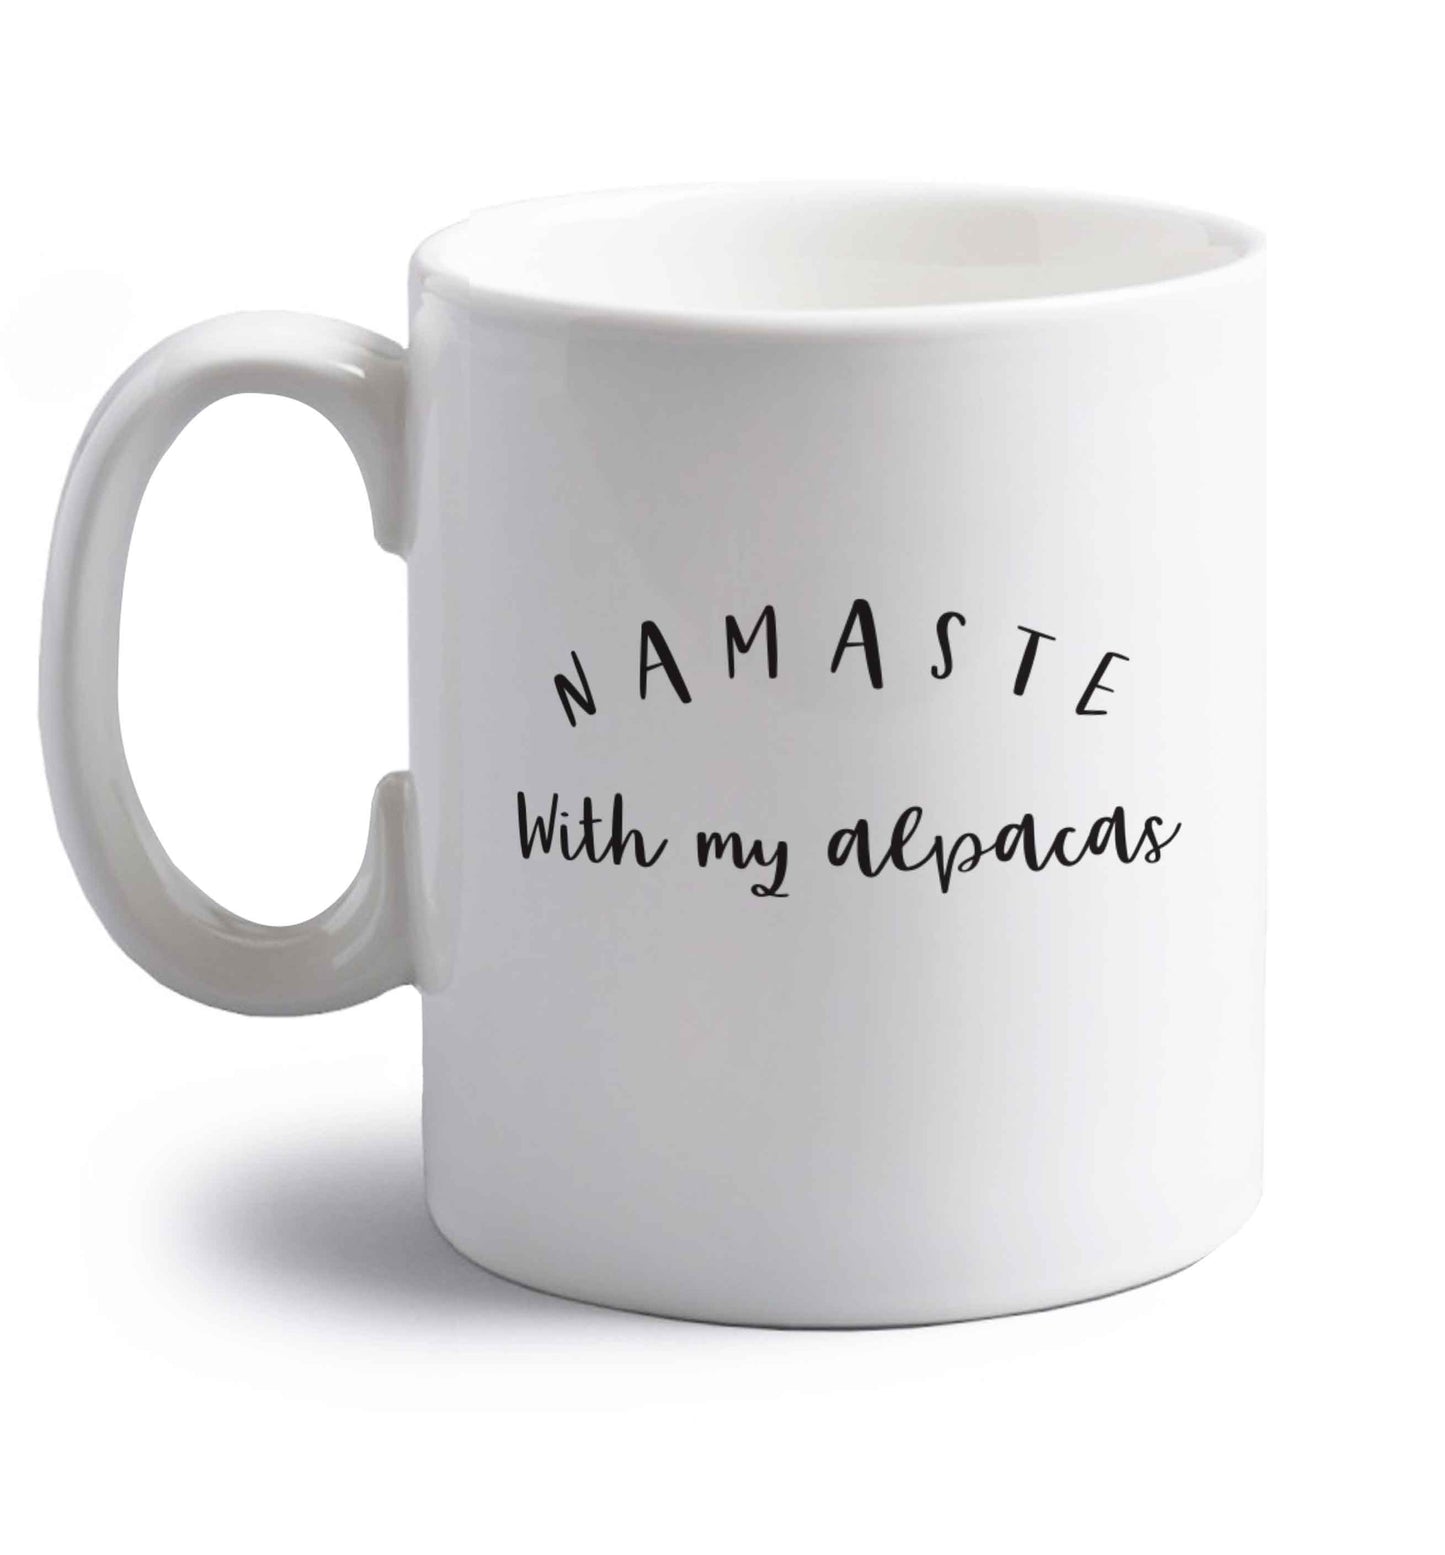 Namaste with my alpacas right handed white ceramic mug 